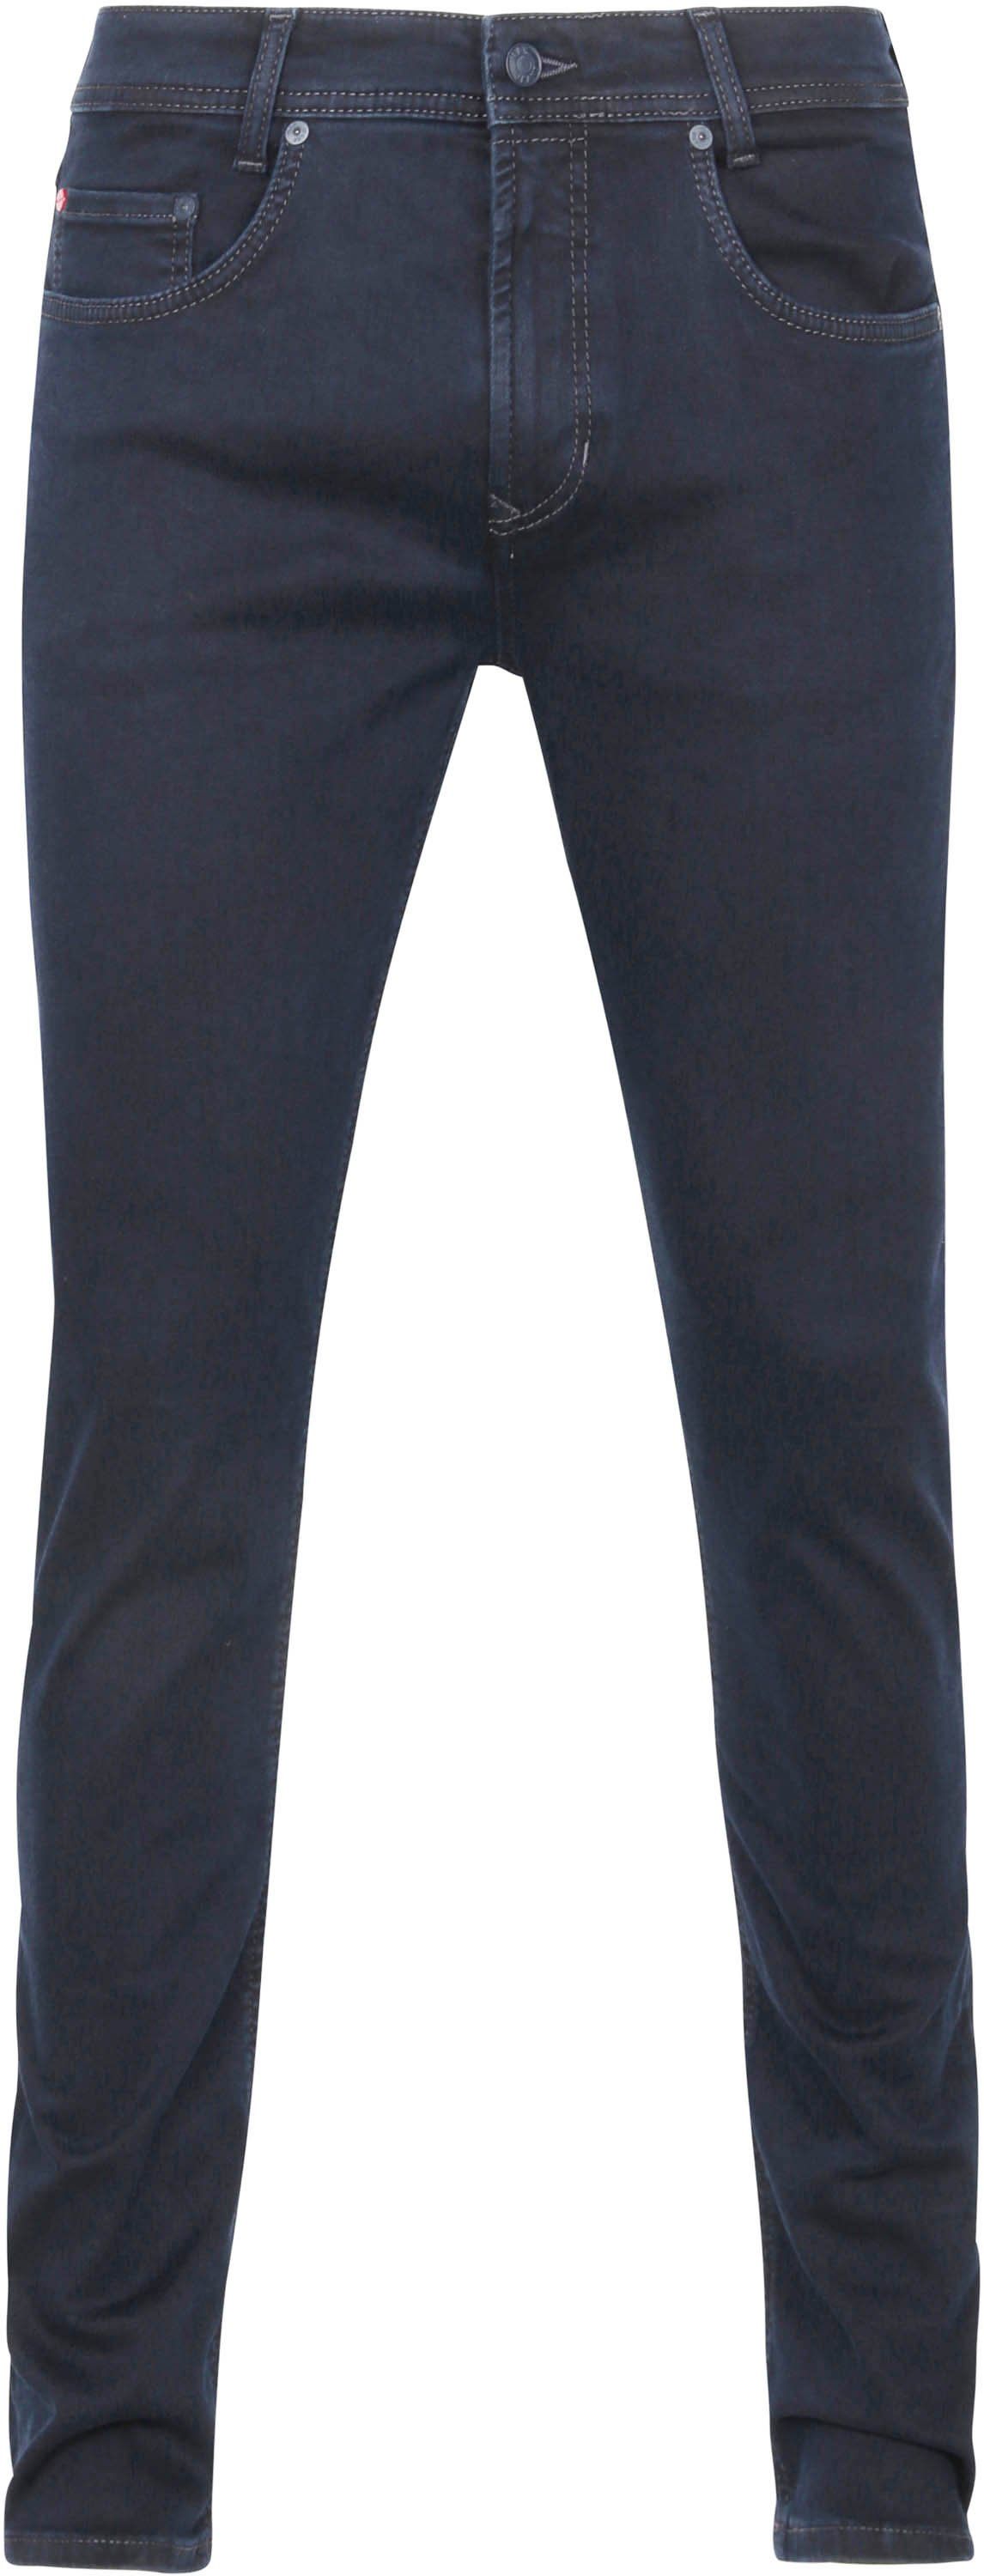 Mac Jeans Arne Pipe Flexx Superstretch H799 Dark Blue Black Blue size W 29